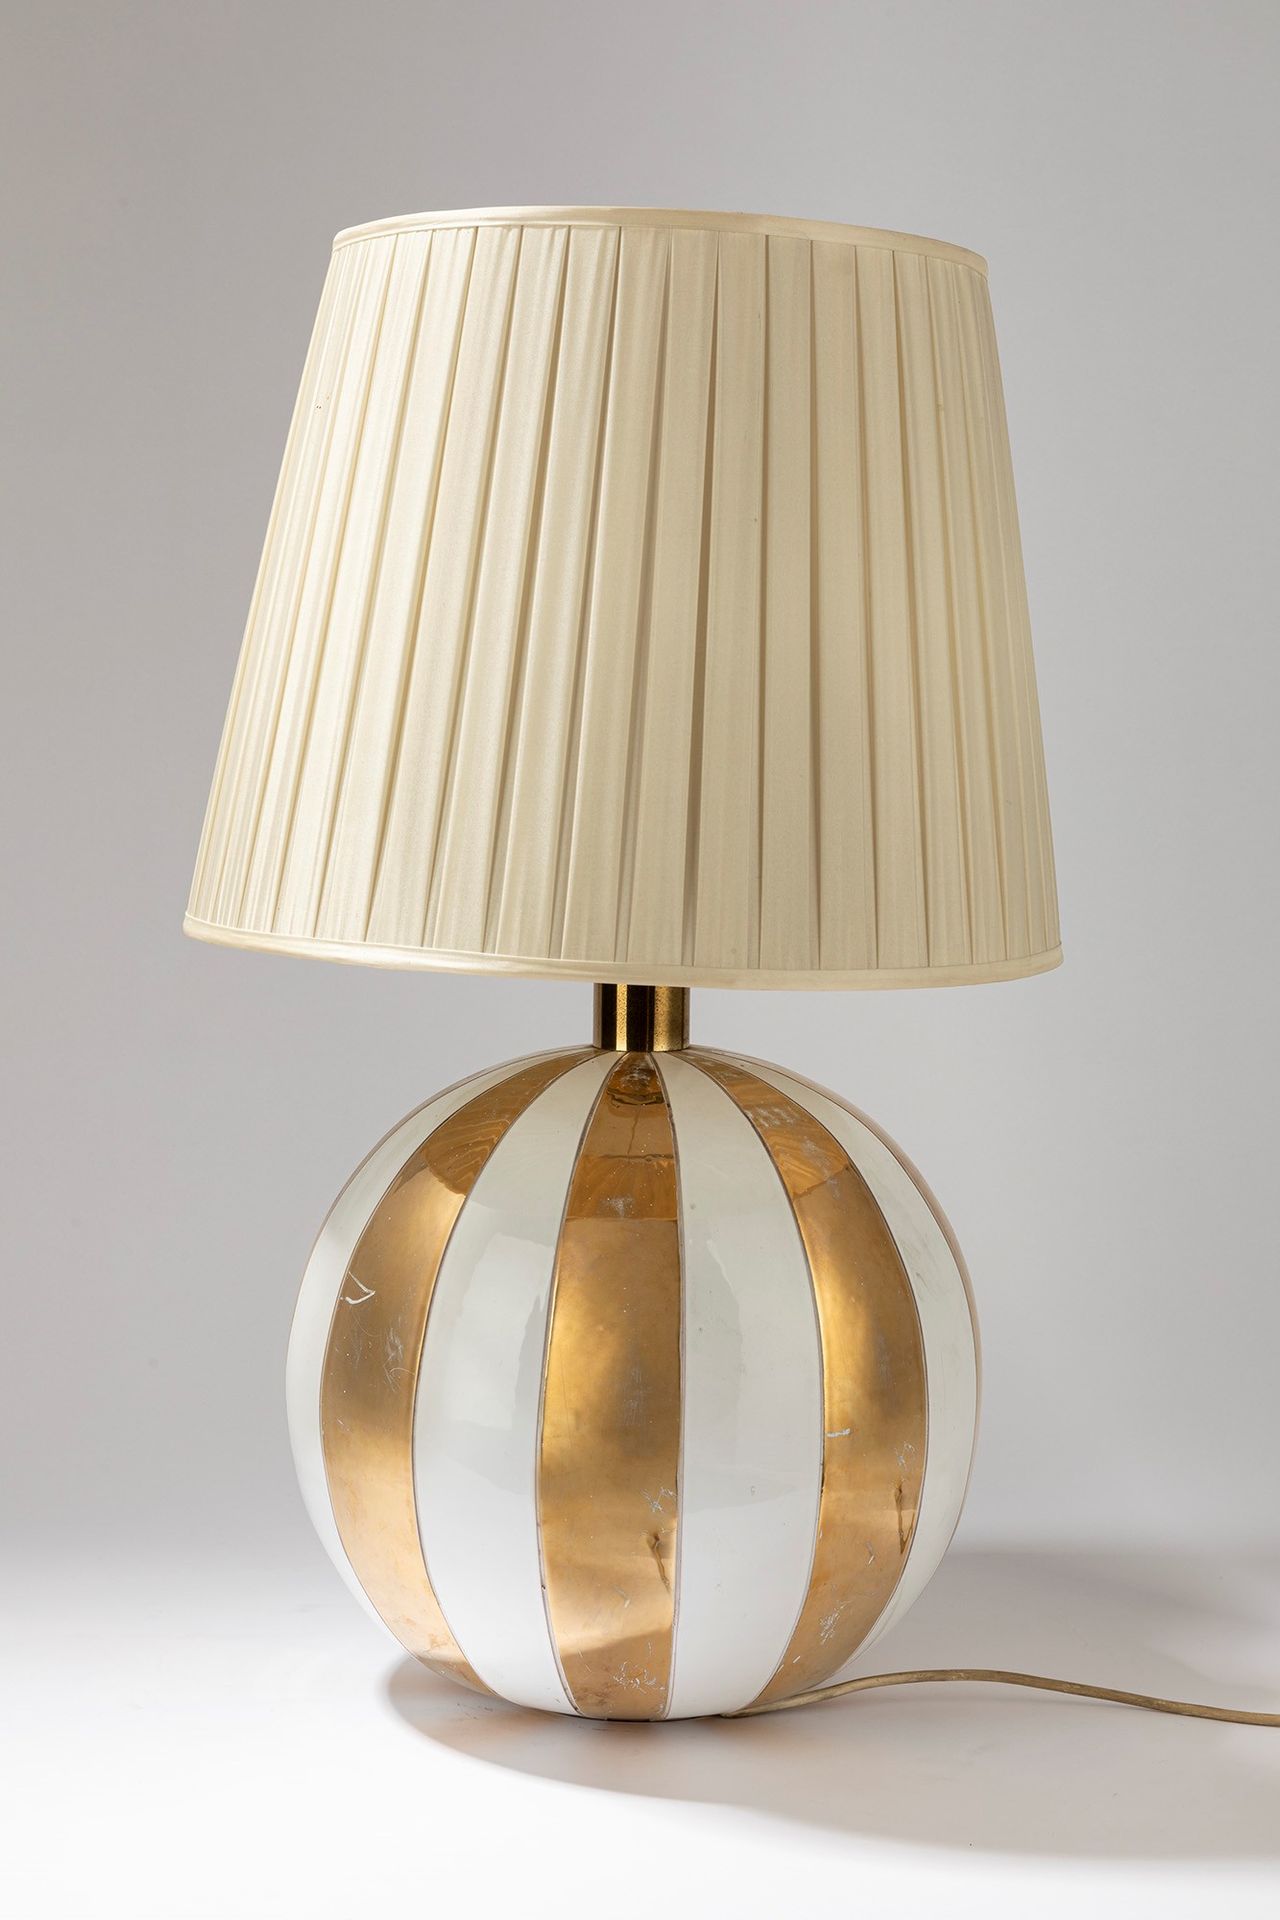 ITALIAN MANUFACTURE Lampe de table, période 60's

H cm 80
en céramique émaillée &hellip;